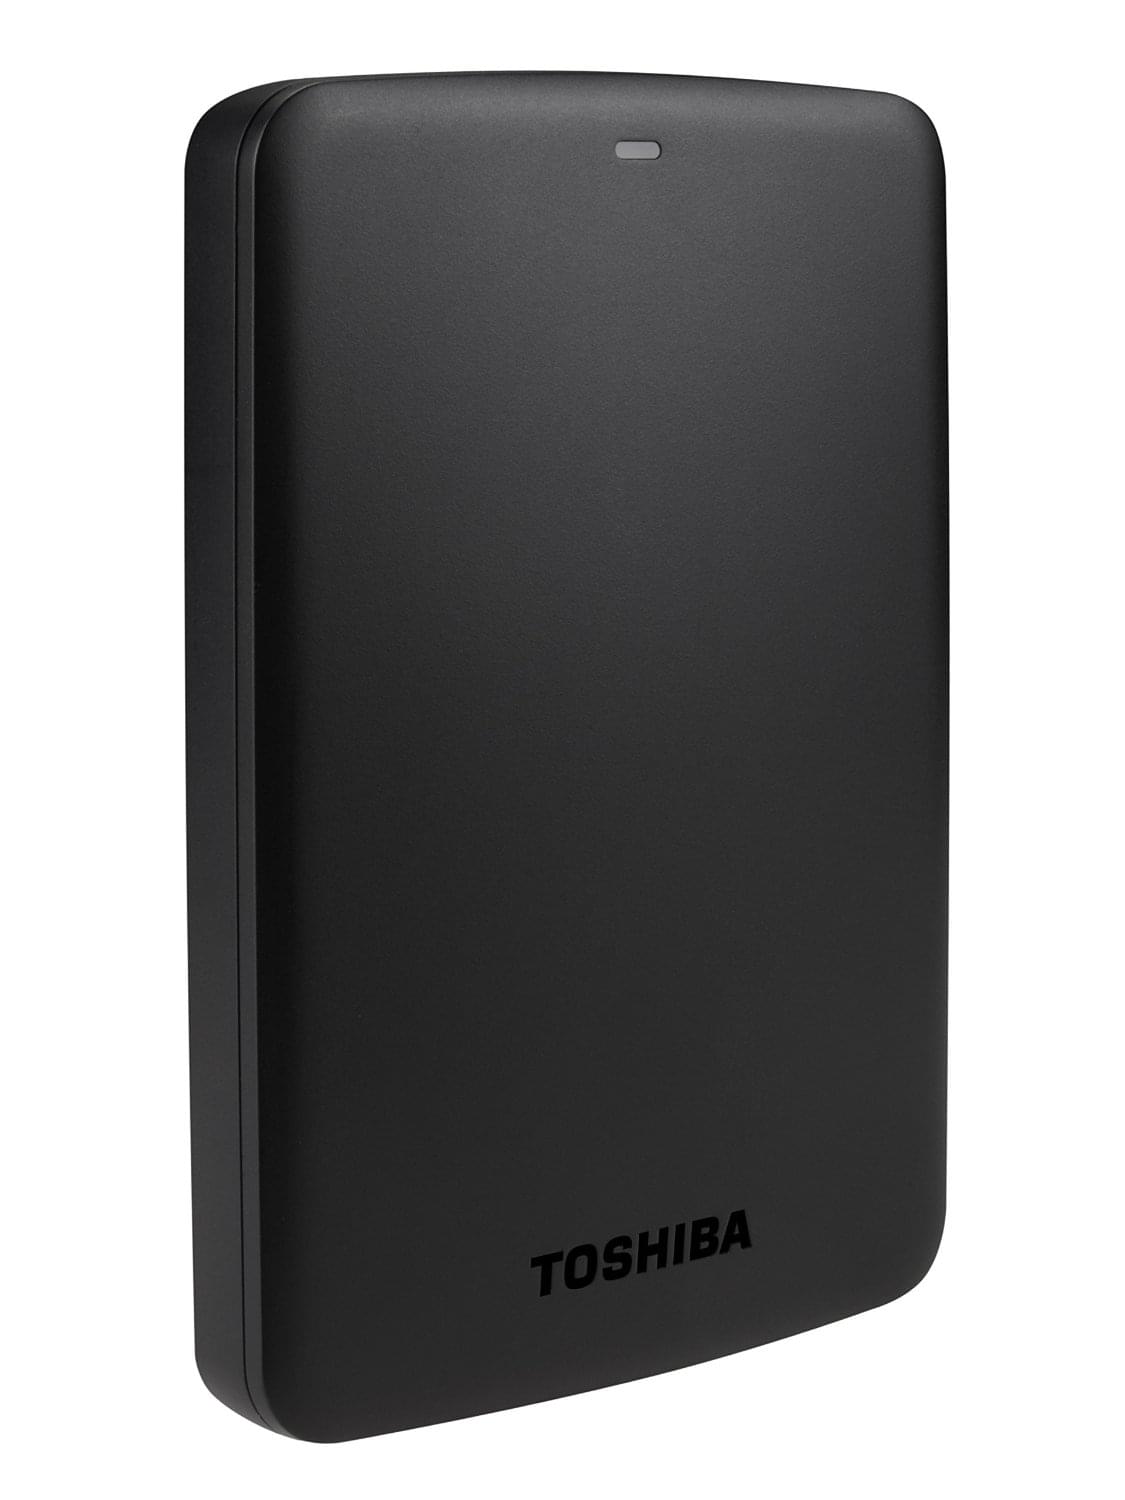 Disque dur externe Toshiba 1To 2"1/2 USB3.0 Noir - Canvio Basics - HDTB310EK3